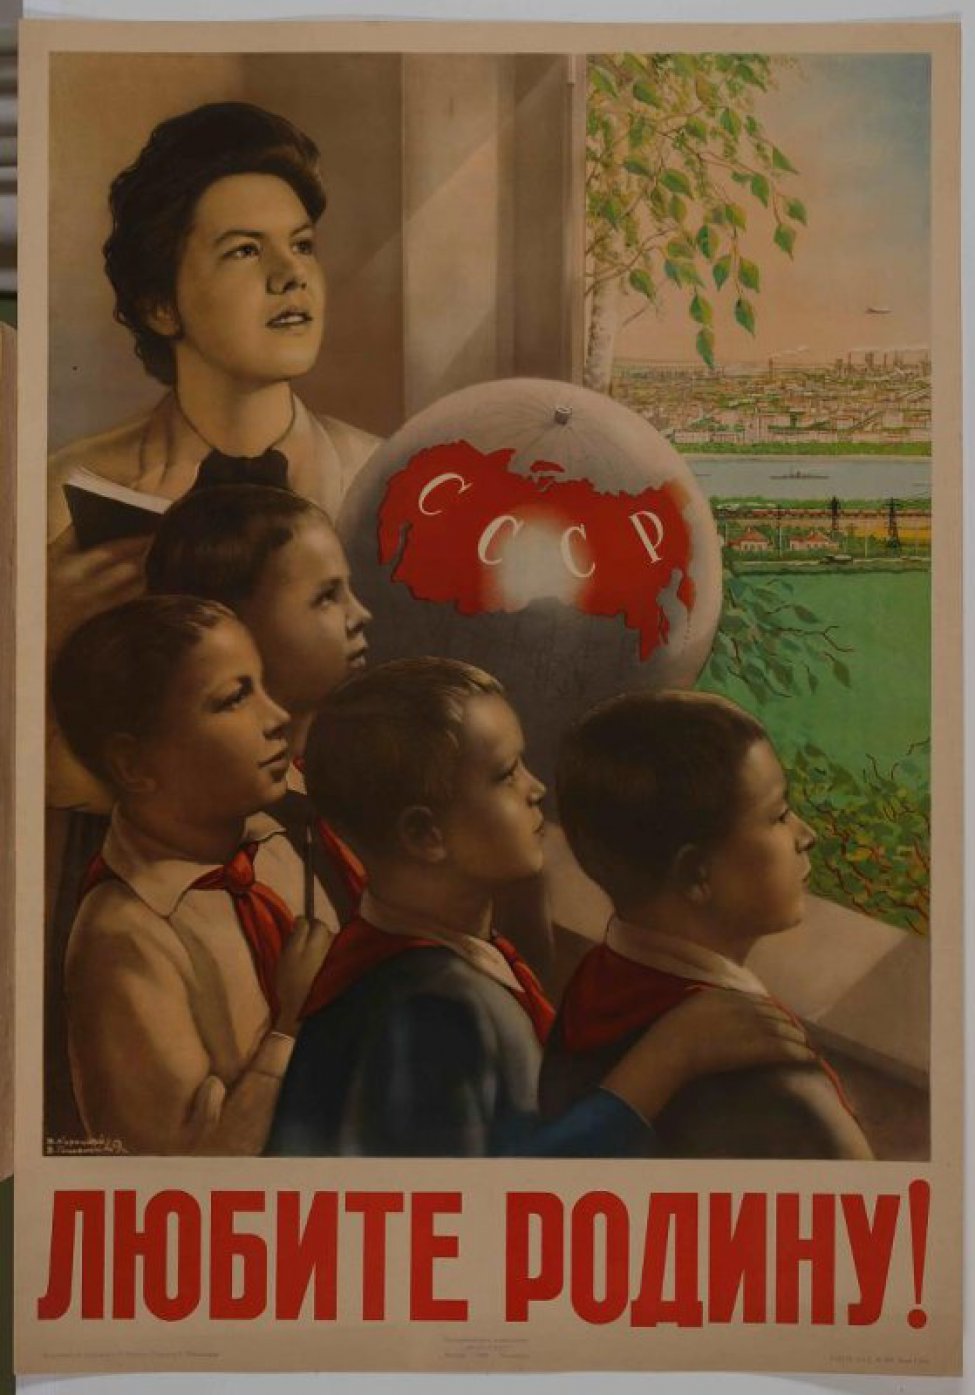 Изображена учительница с четырьмя пионерами у раскрытого окна. На подоконнике глобус. В окно виден город.